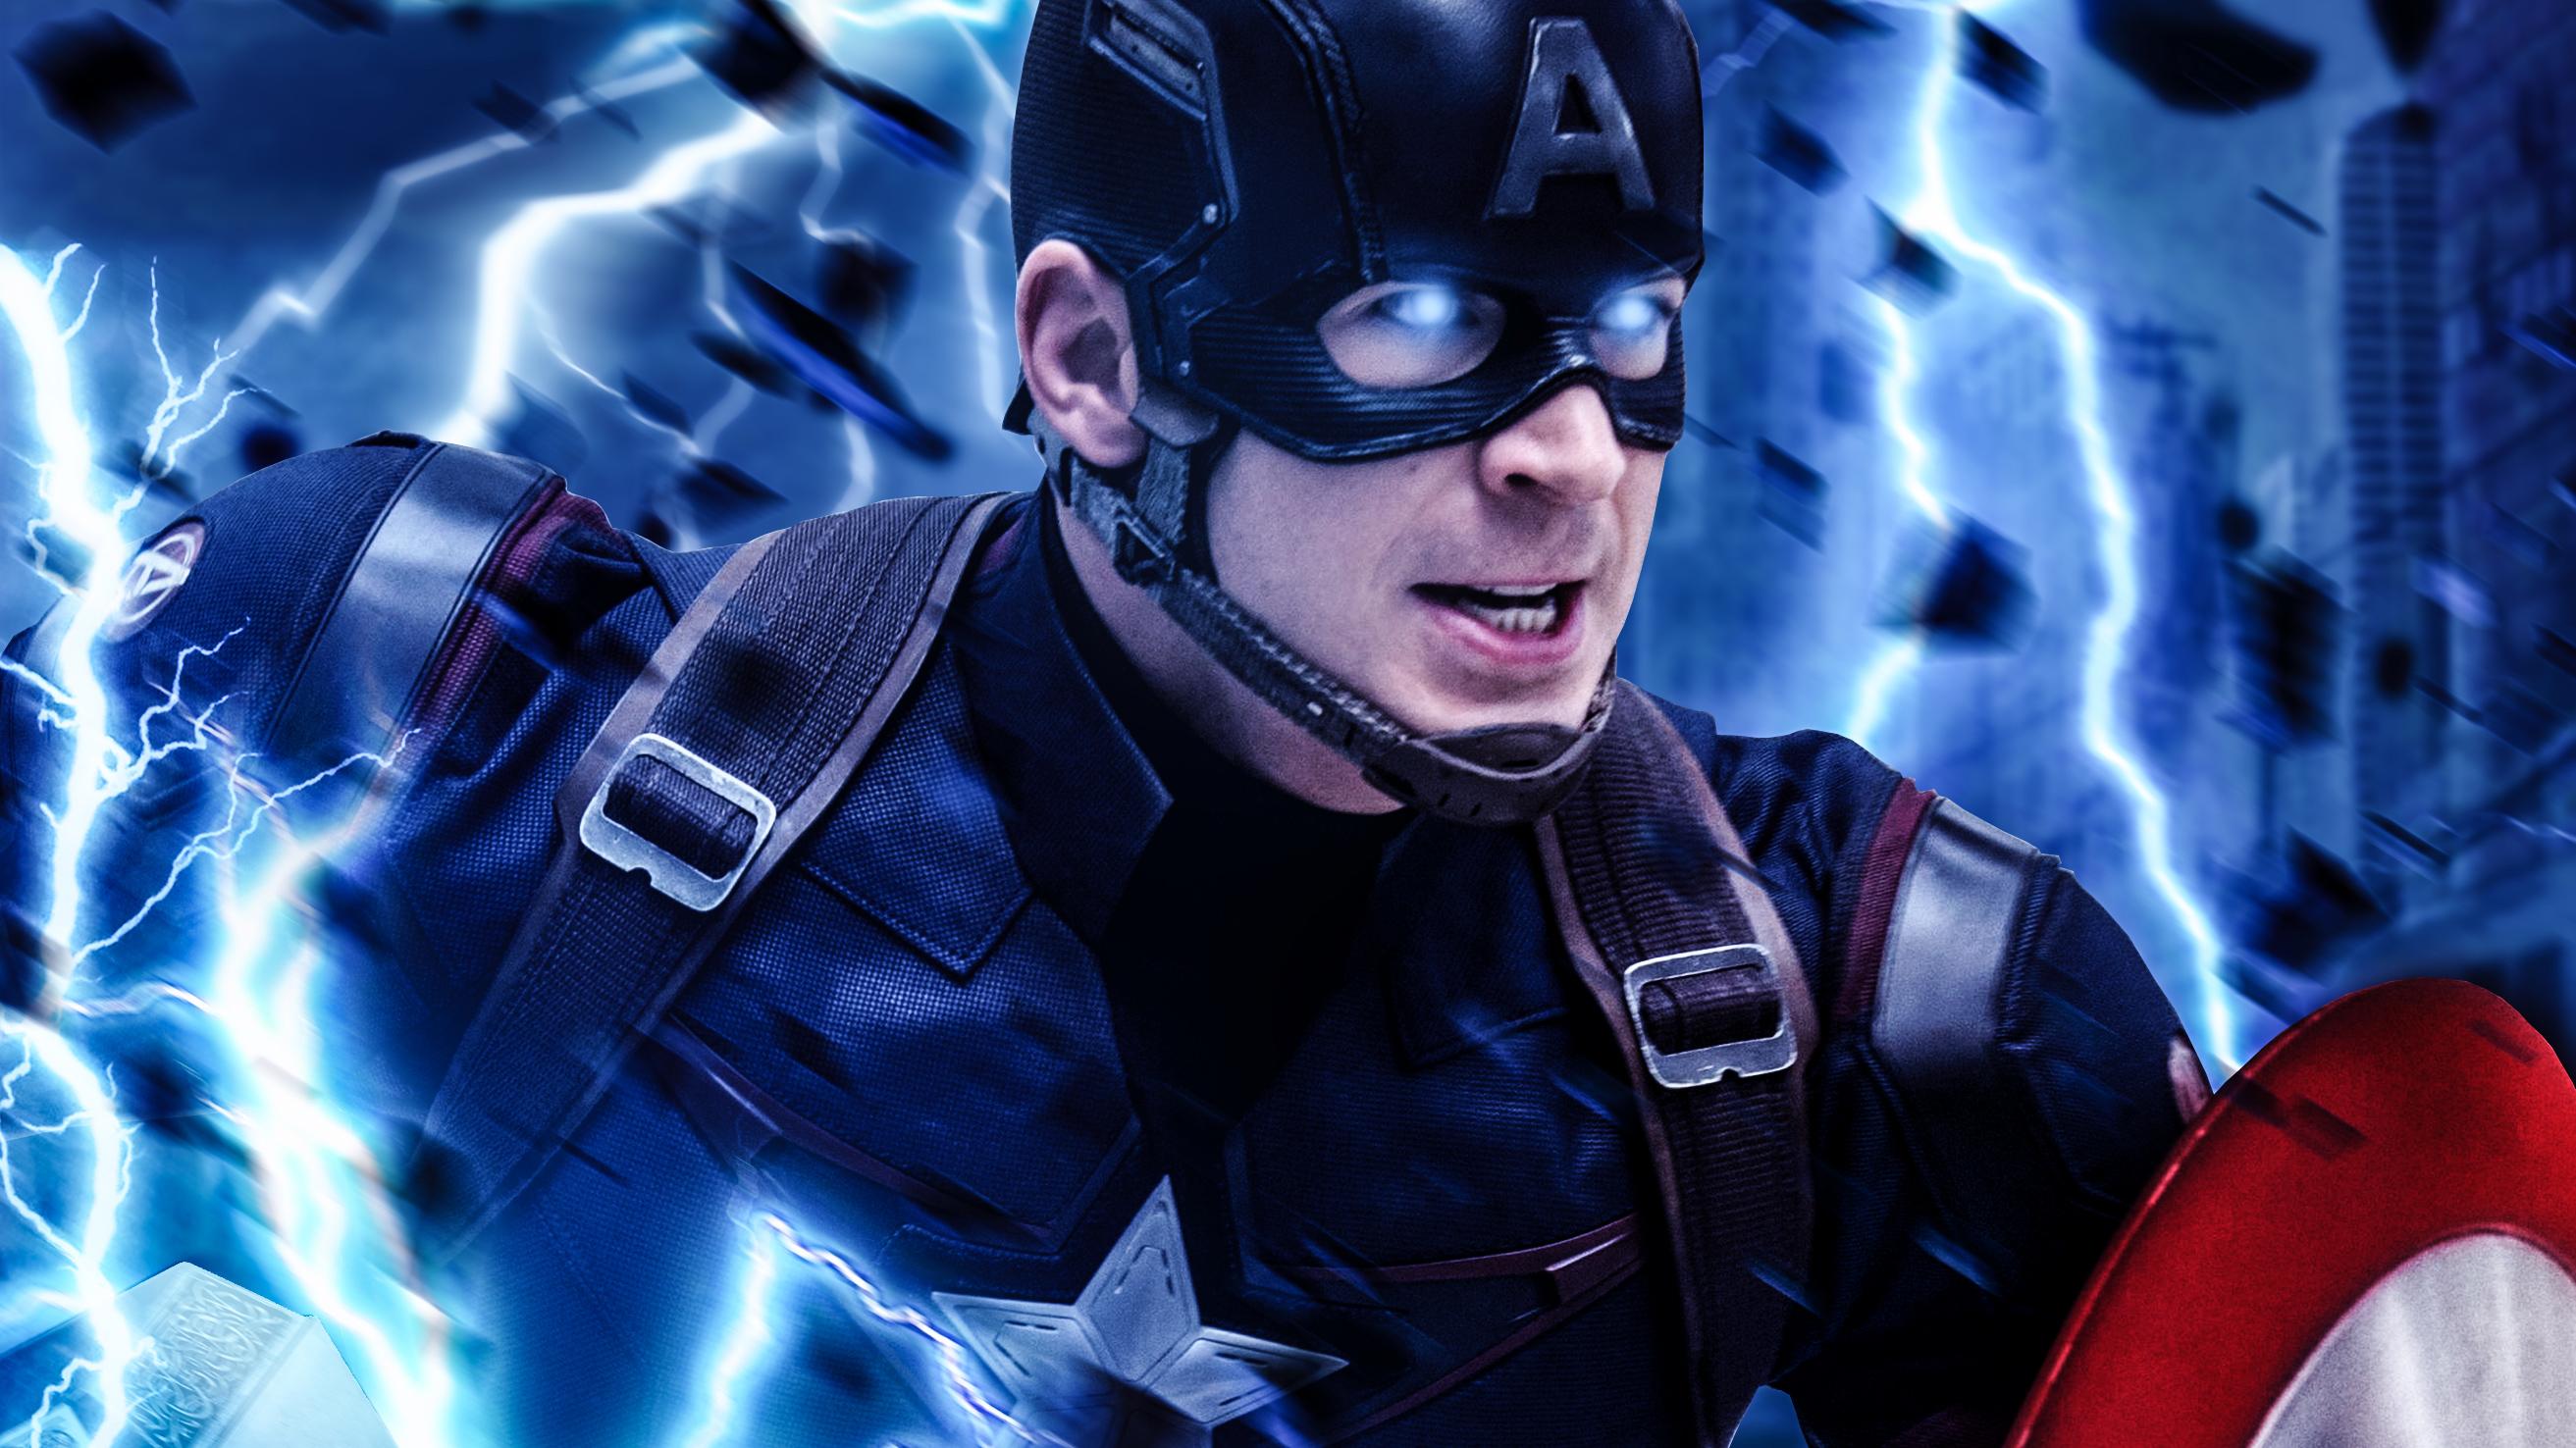 2625 x 1476 · jpeg - Captain America Mjolnir Avengers Endgame Art, HD Superheroes, 4k ...